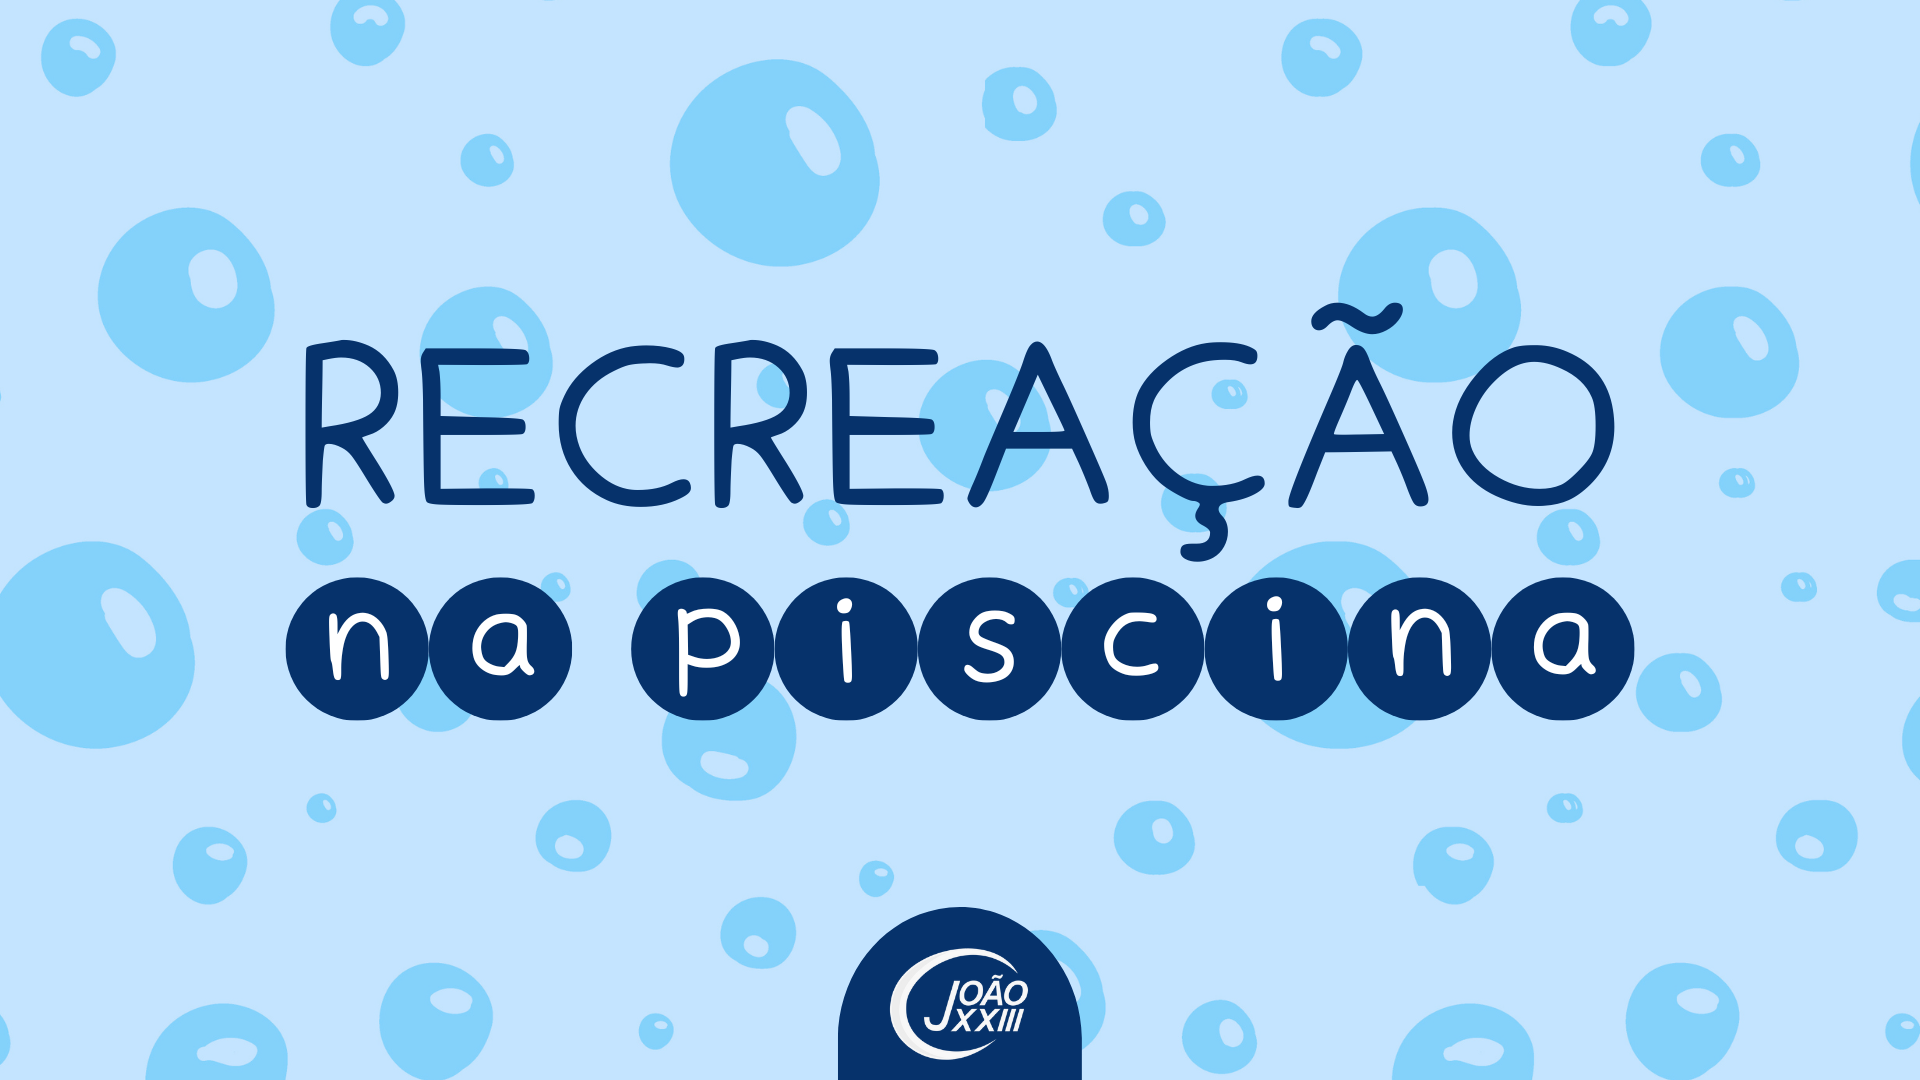 You are currently viewing Recreação na Piscina